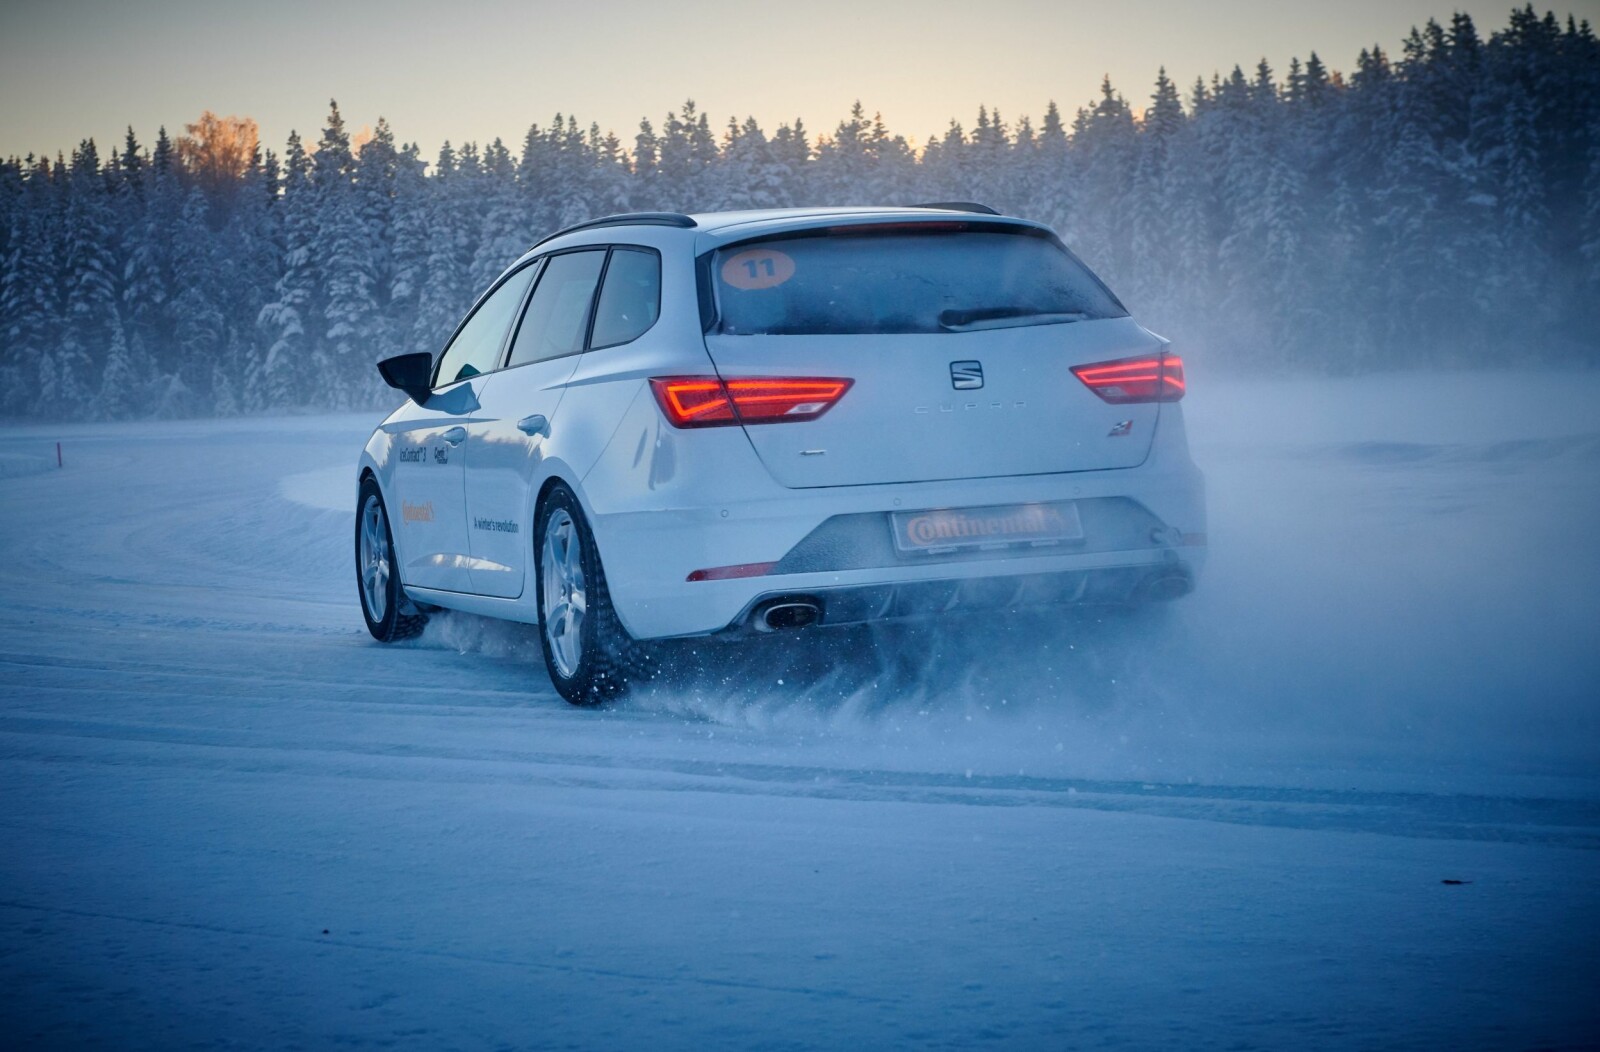 <b>BEST PÅ IS:</b> Kjører du ofte på fast snødekke eller is, er piggdekk et naturlig valg. Foto: Continental 